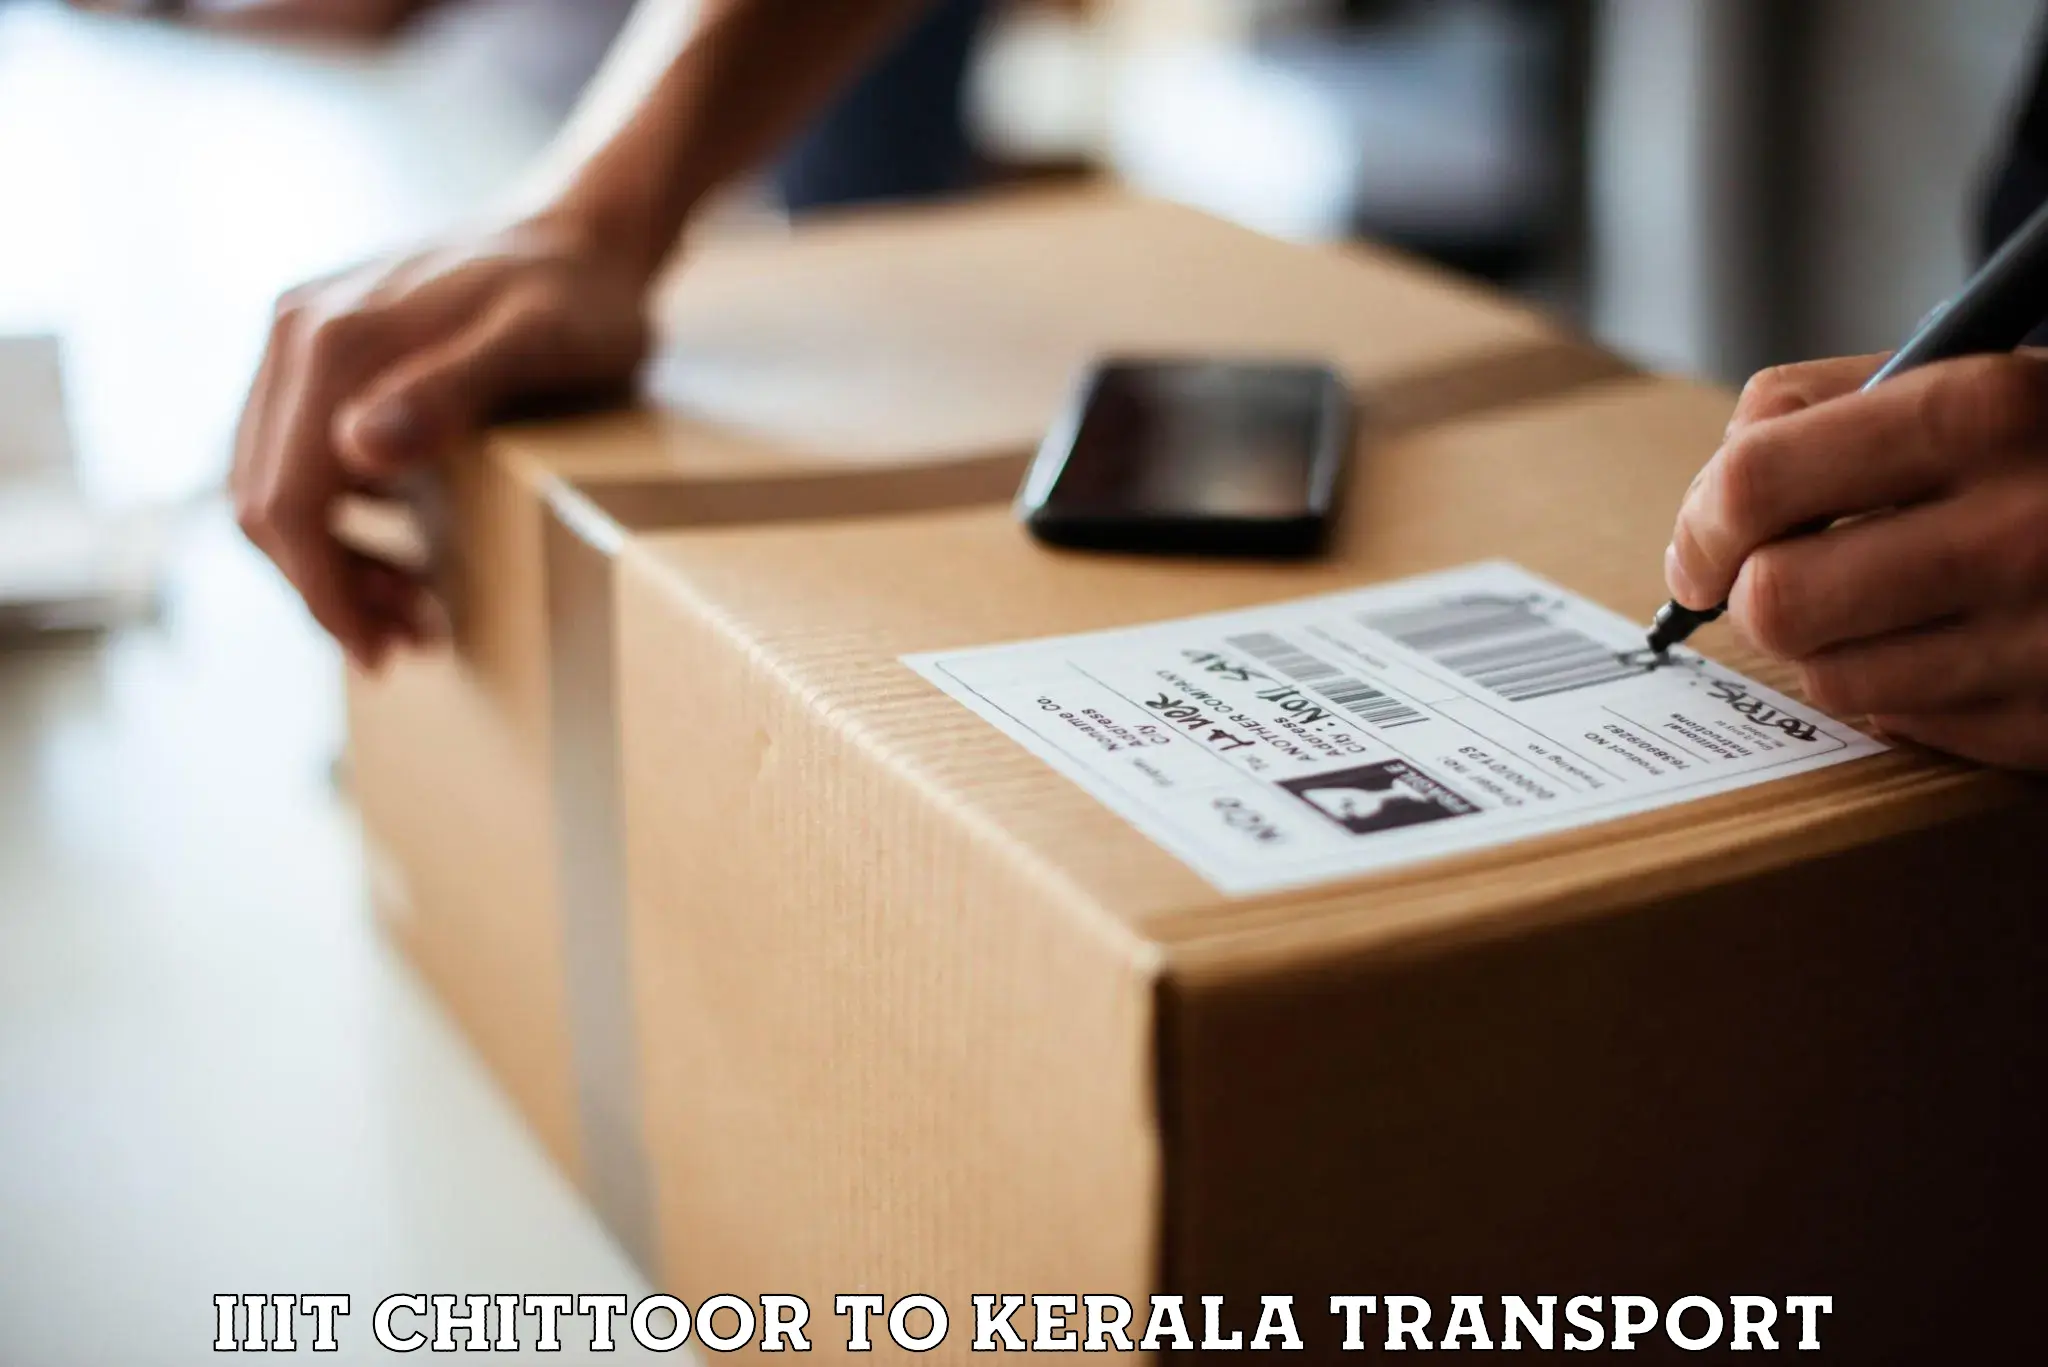 Interstate goods transport IIIT Chittoor to Parippally